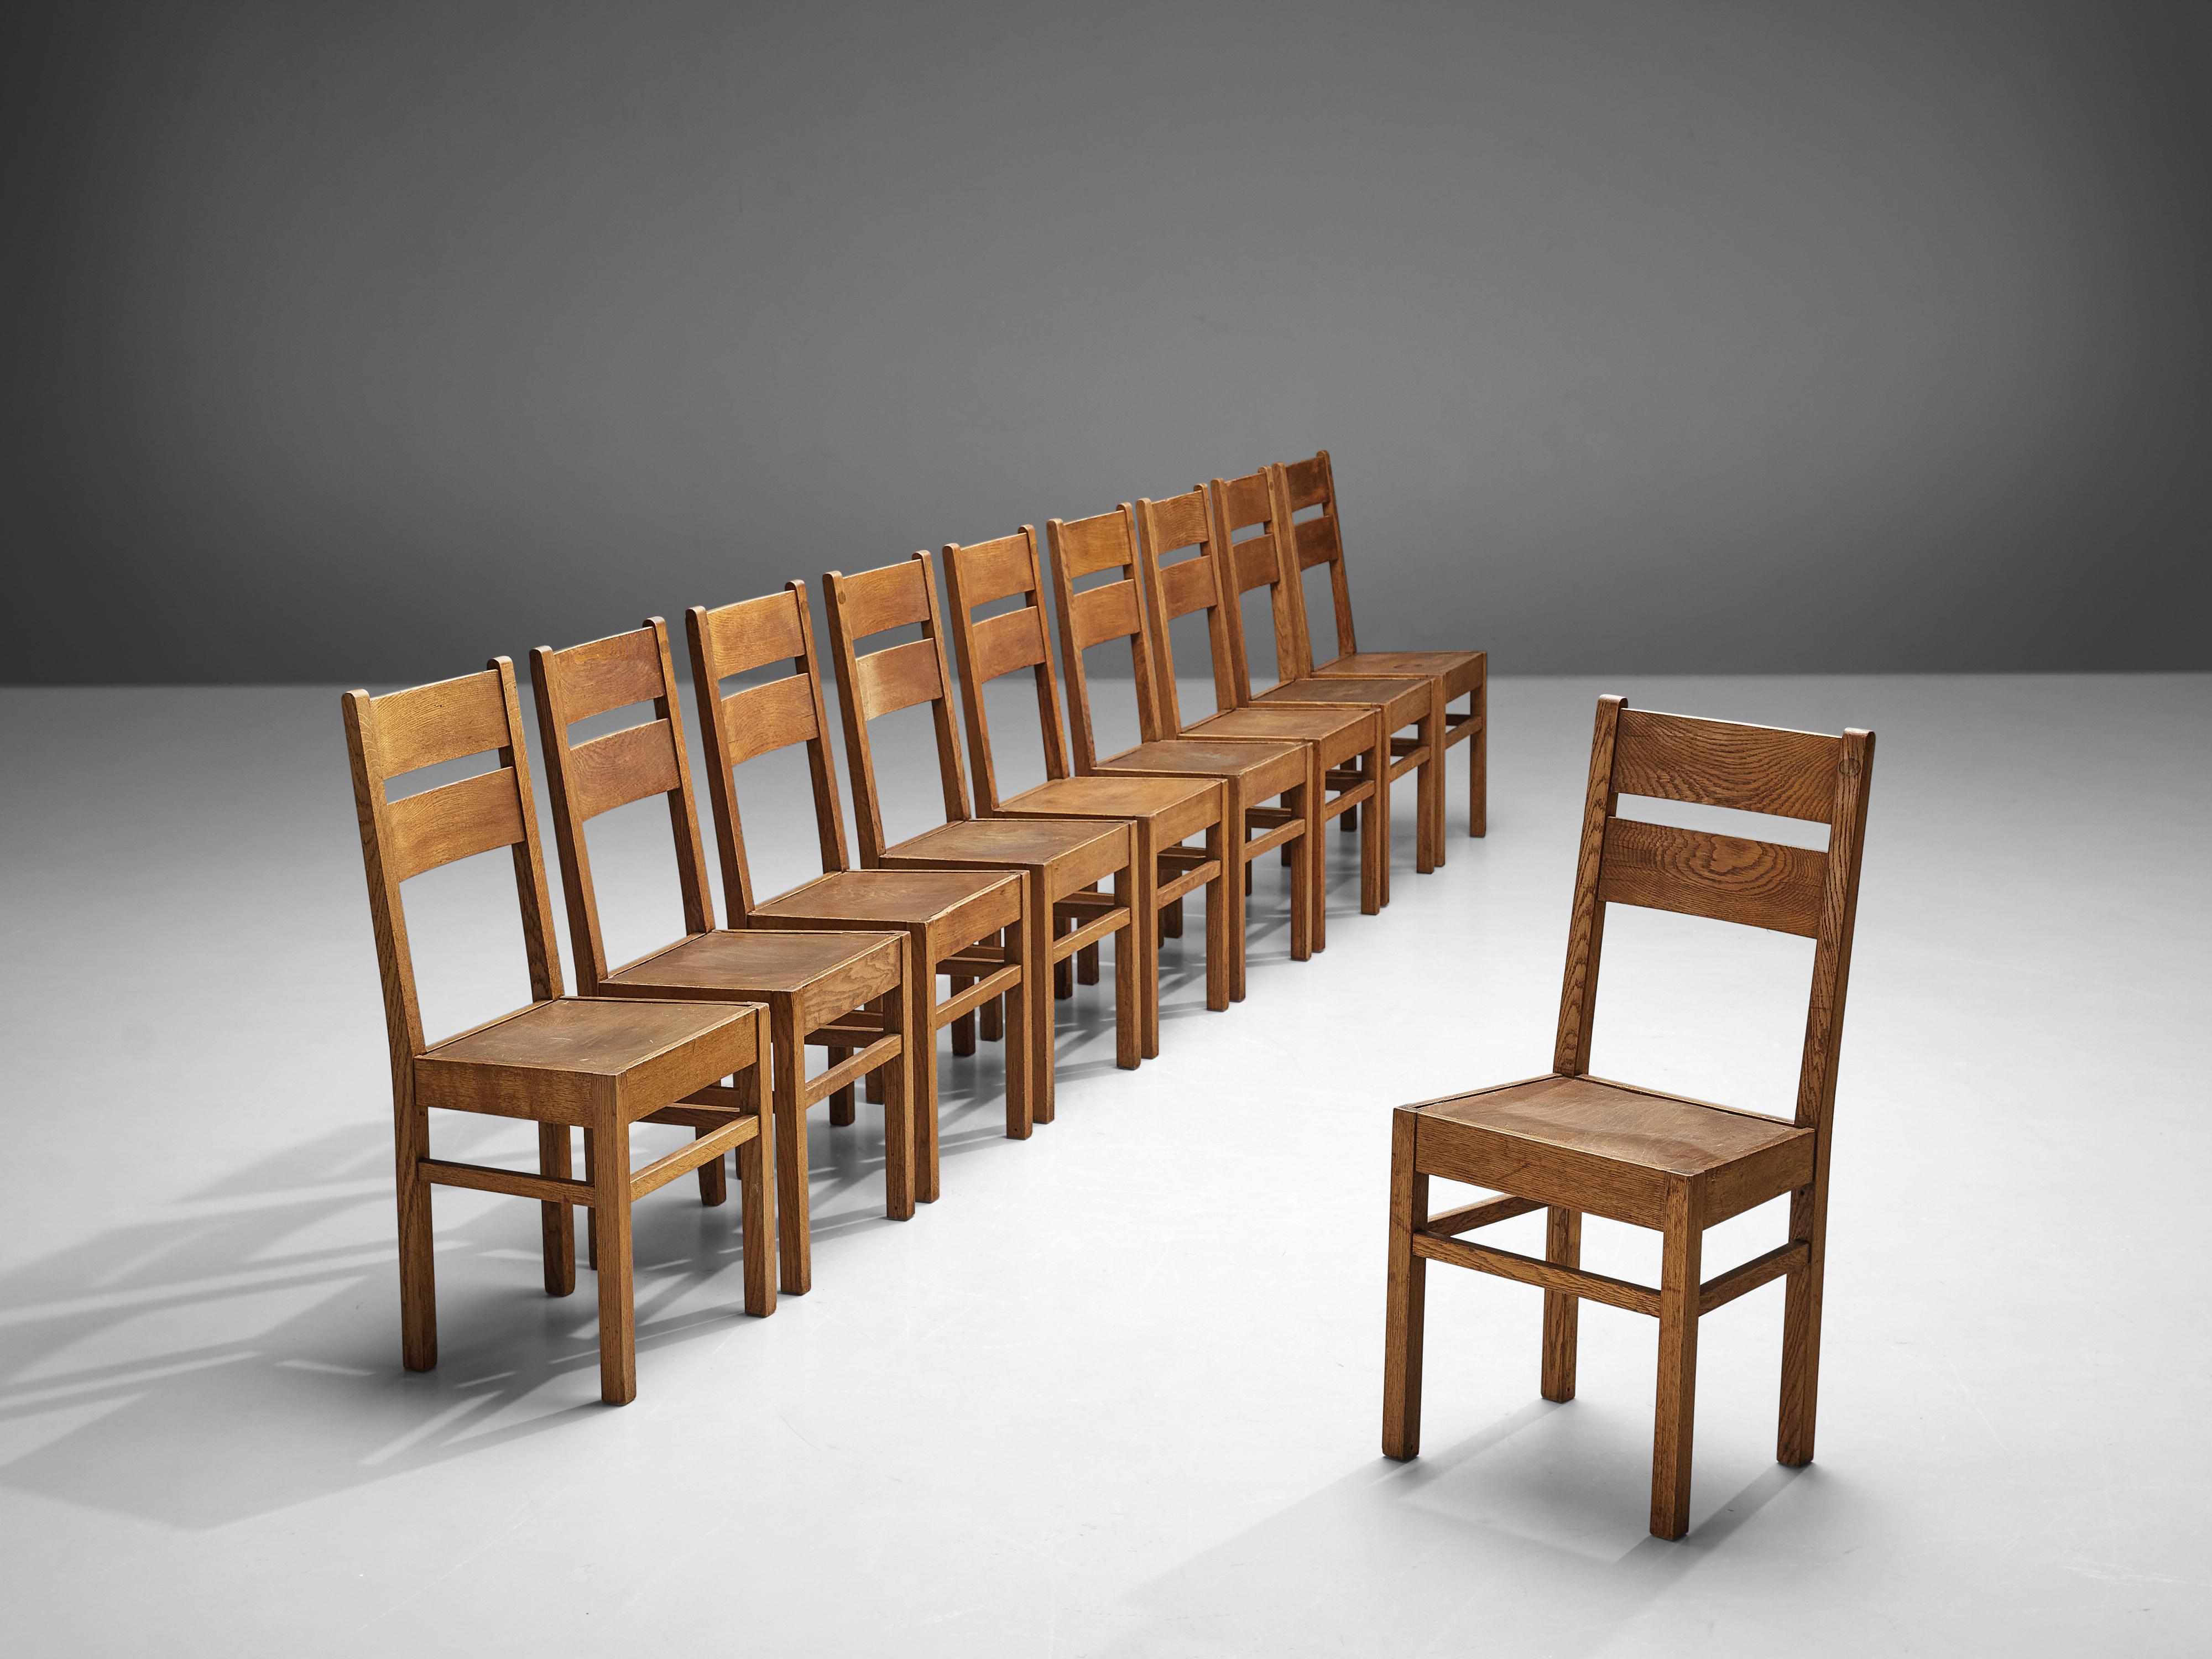 Chaises de salle à manger, chêne, Pays-Bas, années 1940

Ces chaises subtiles et modestes d'origine néerlandaise sont exécutées en chêne qui a une expression naturelle grâce aux veines de bois visibles et au ton chaud. Naturellement, cela confère à